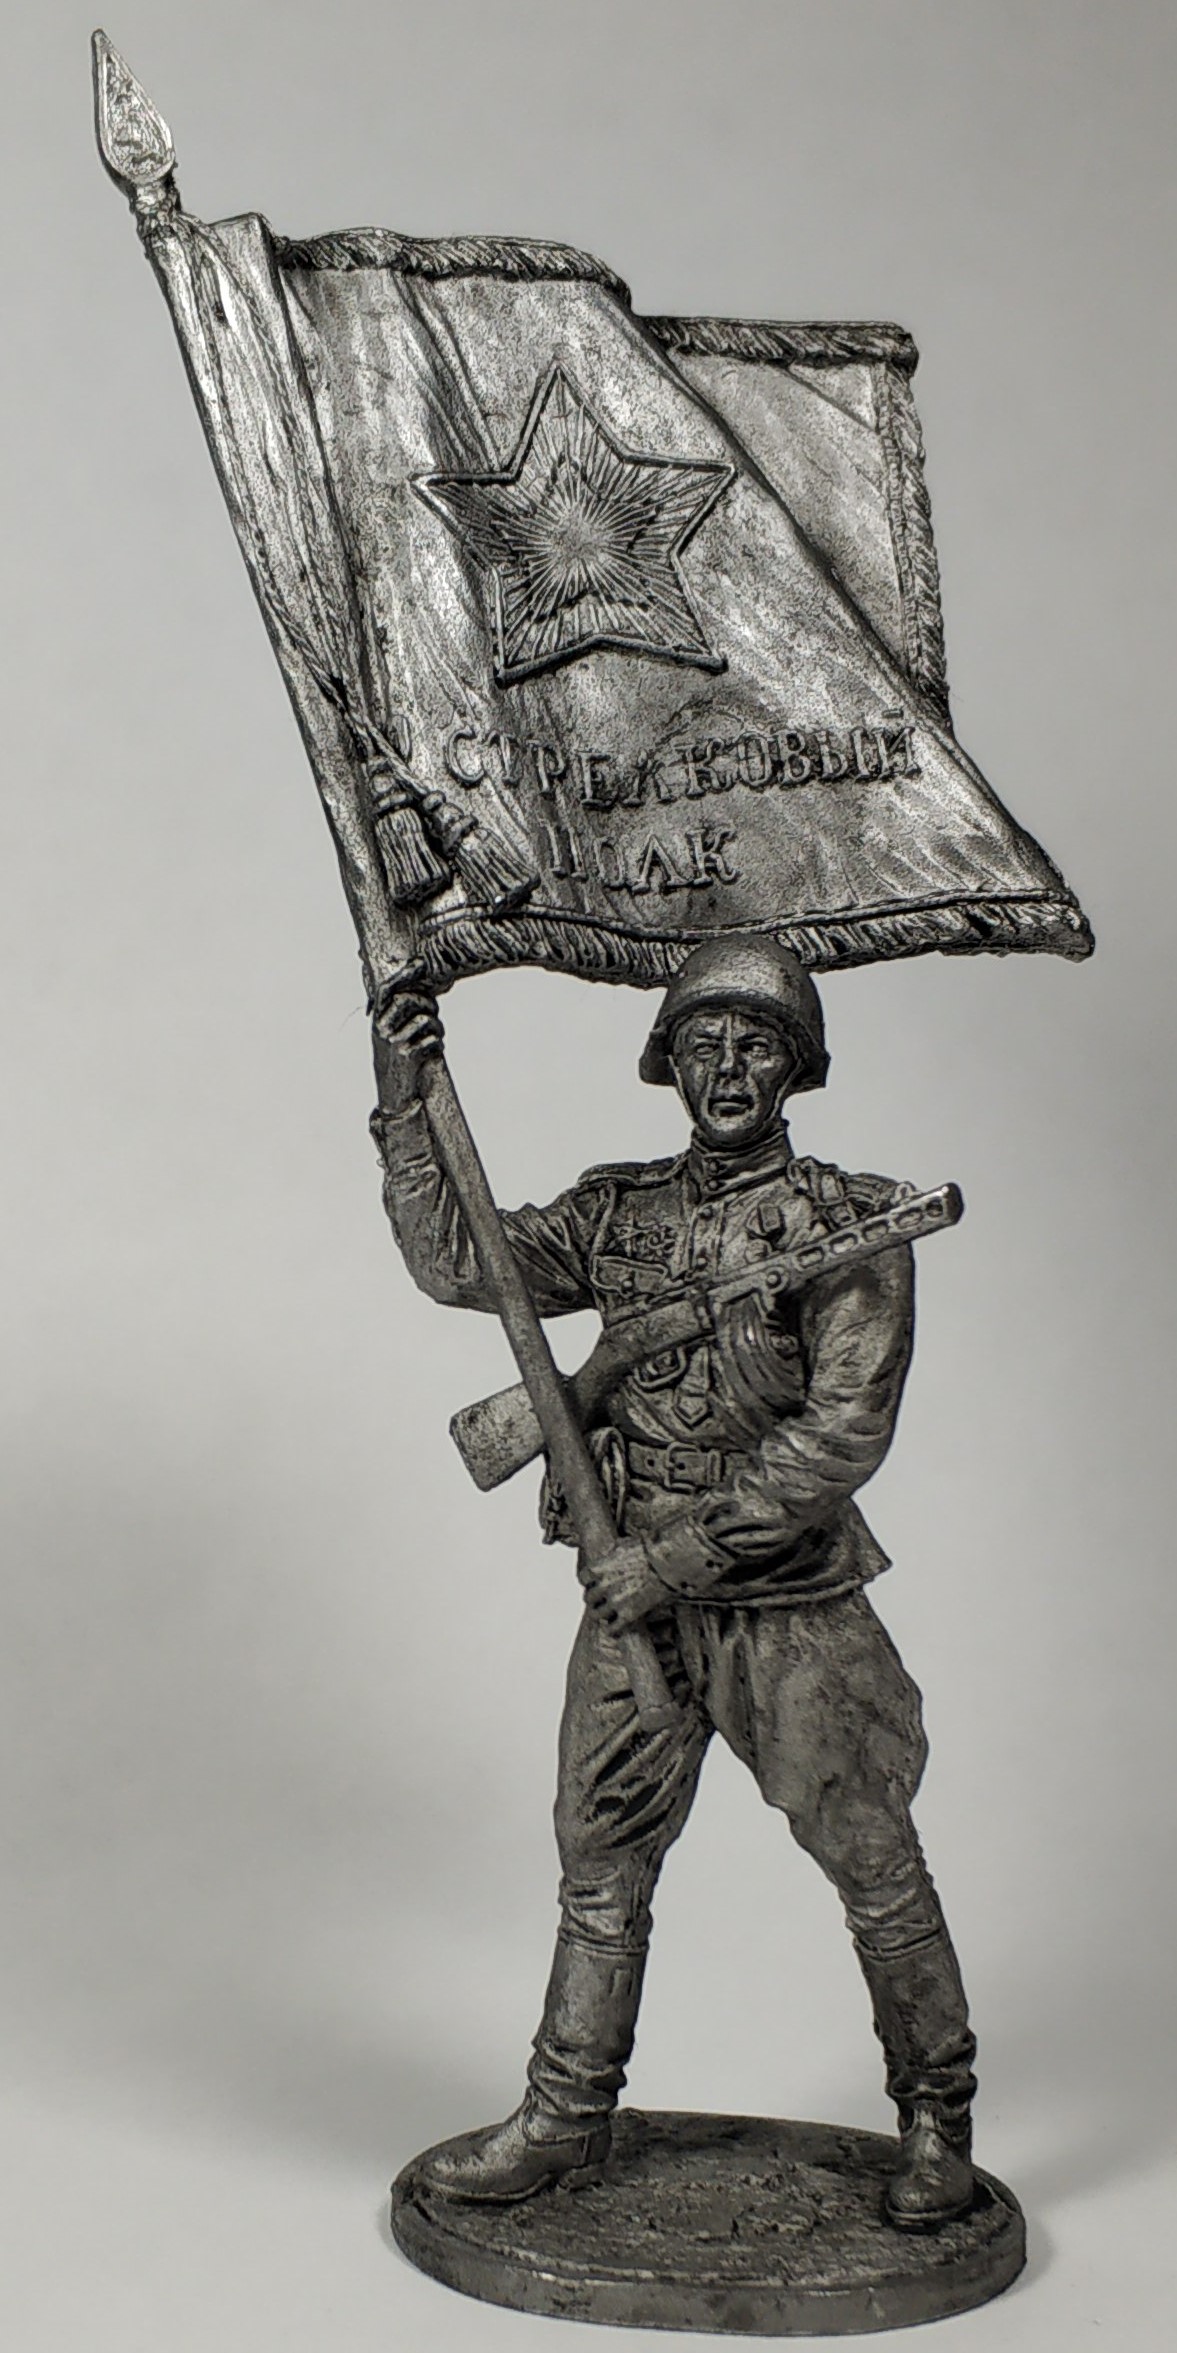 WW2-45  миниатюра  Старшина Красной армии с полковым знаменем1943-45 гг.  СССР